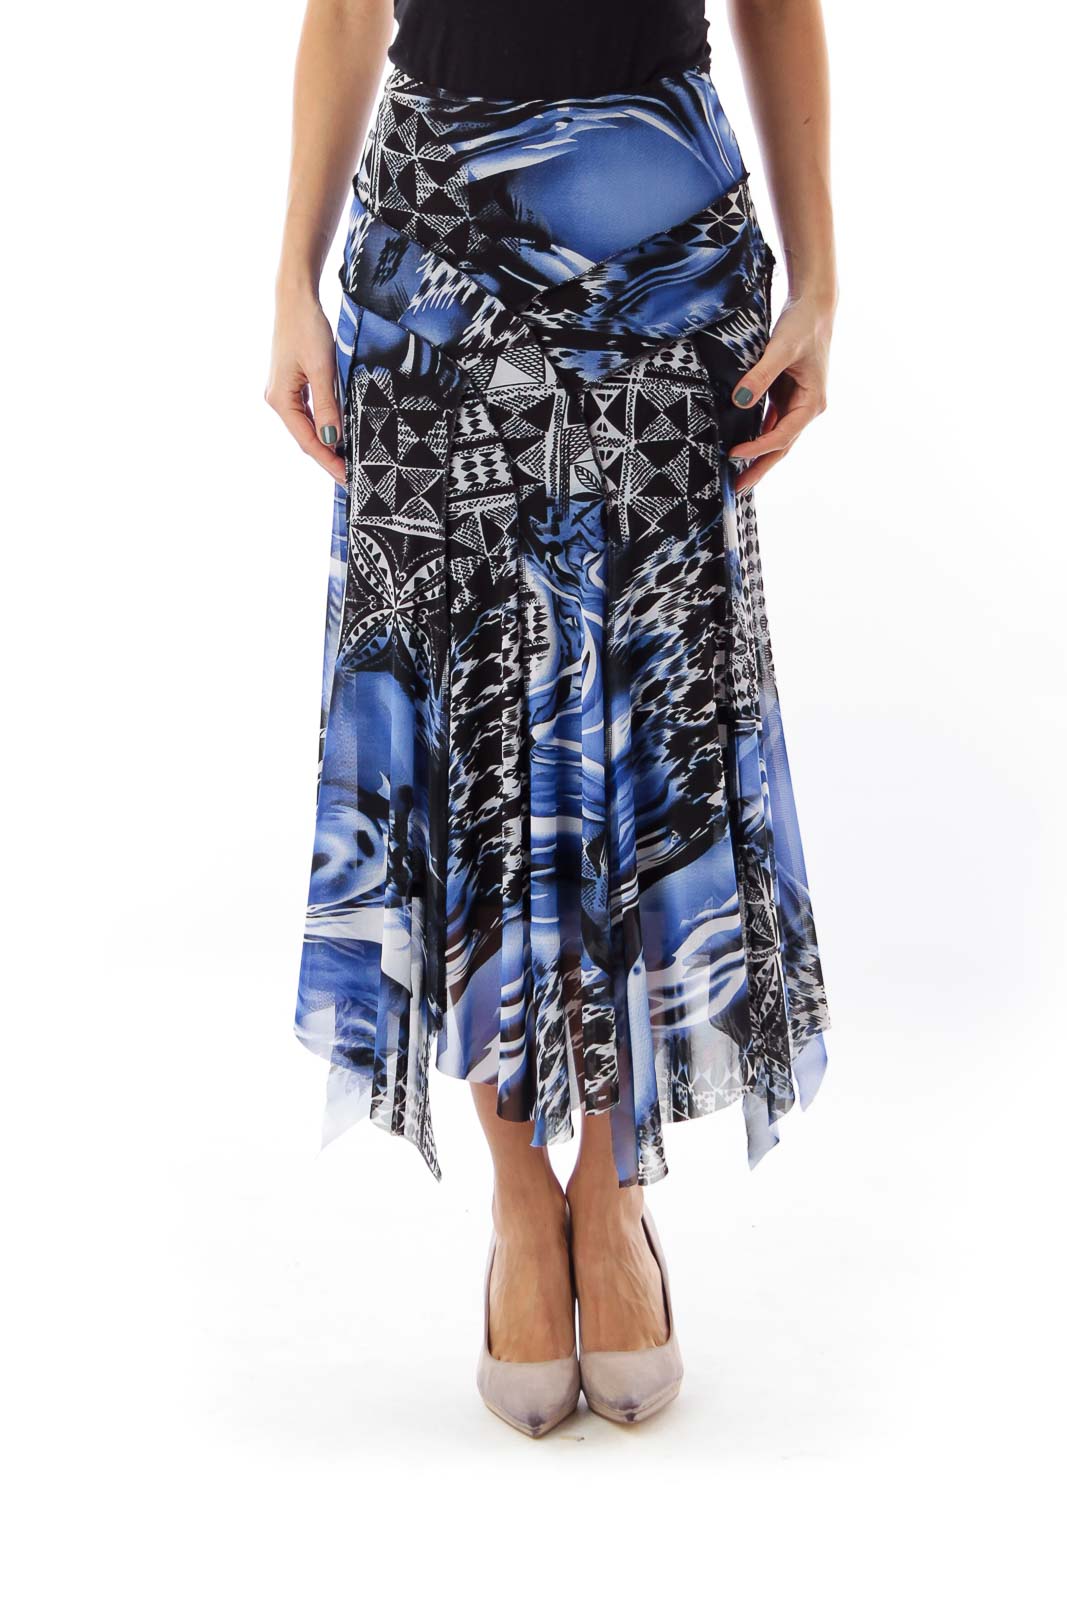 Black & Blue Print Skirt Front